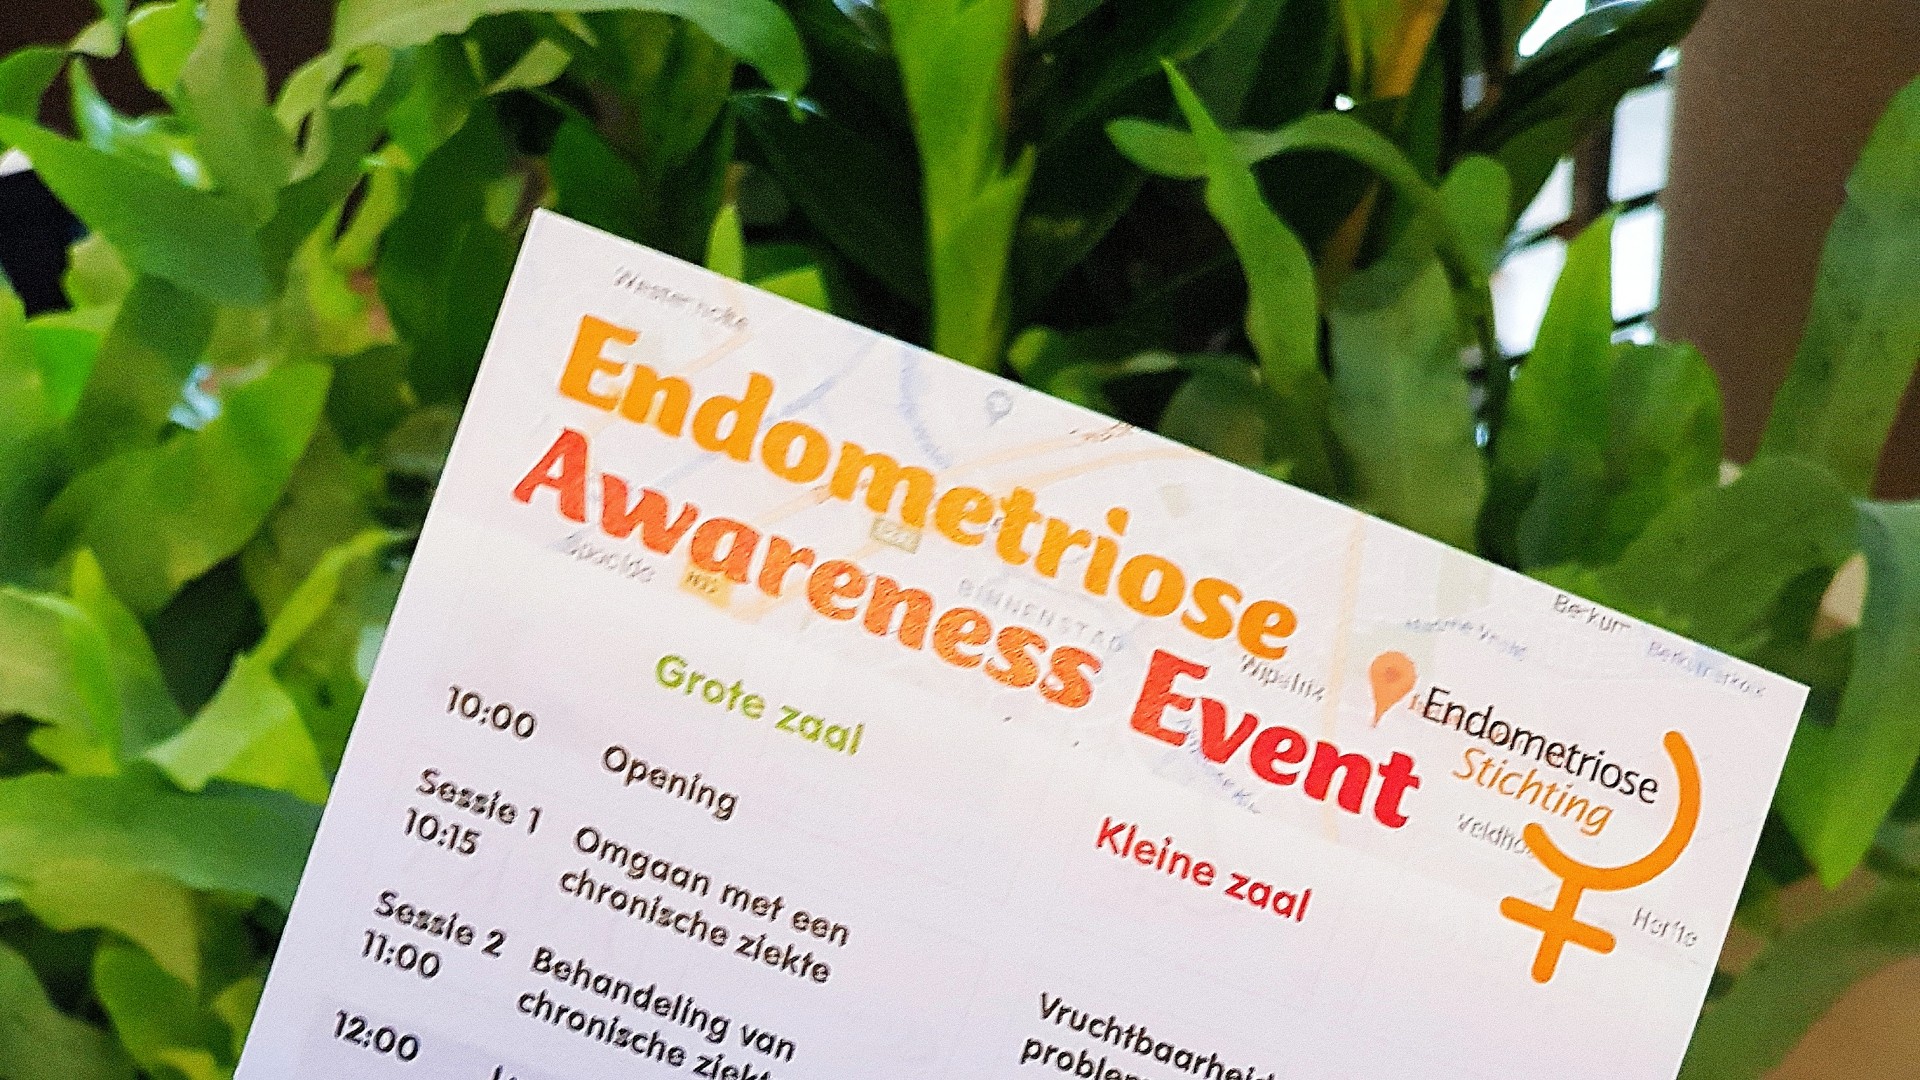 Endometriose Awareness!